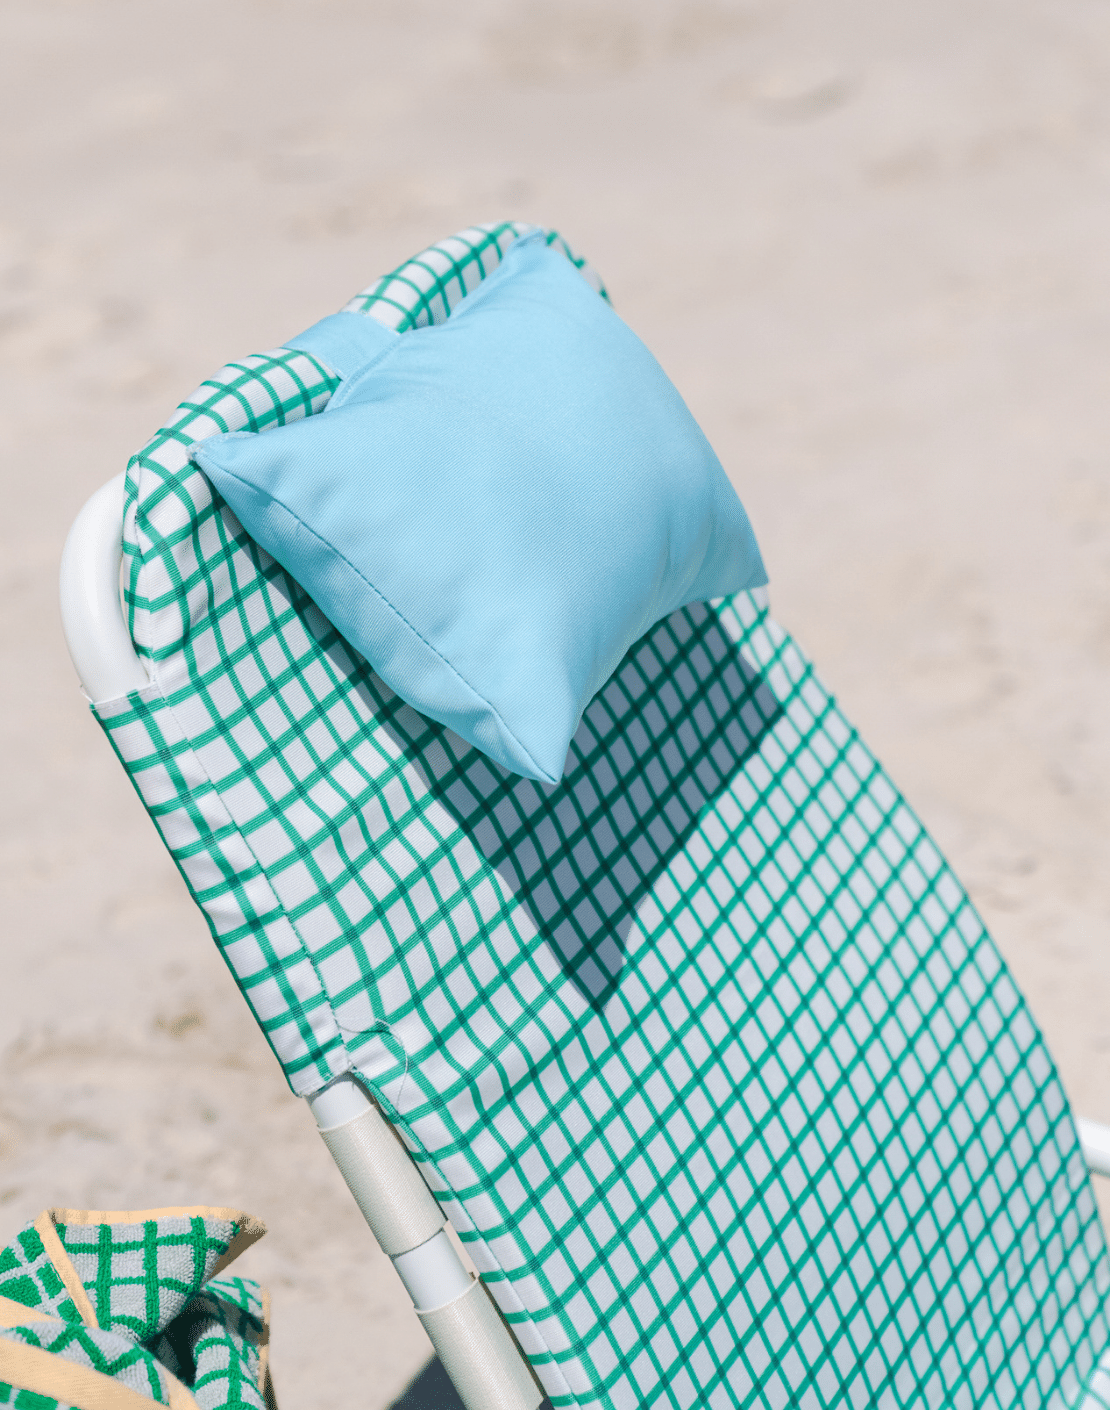 Marseille Beach Chair Head Pillow